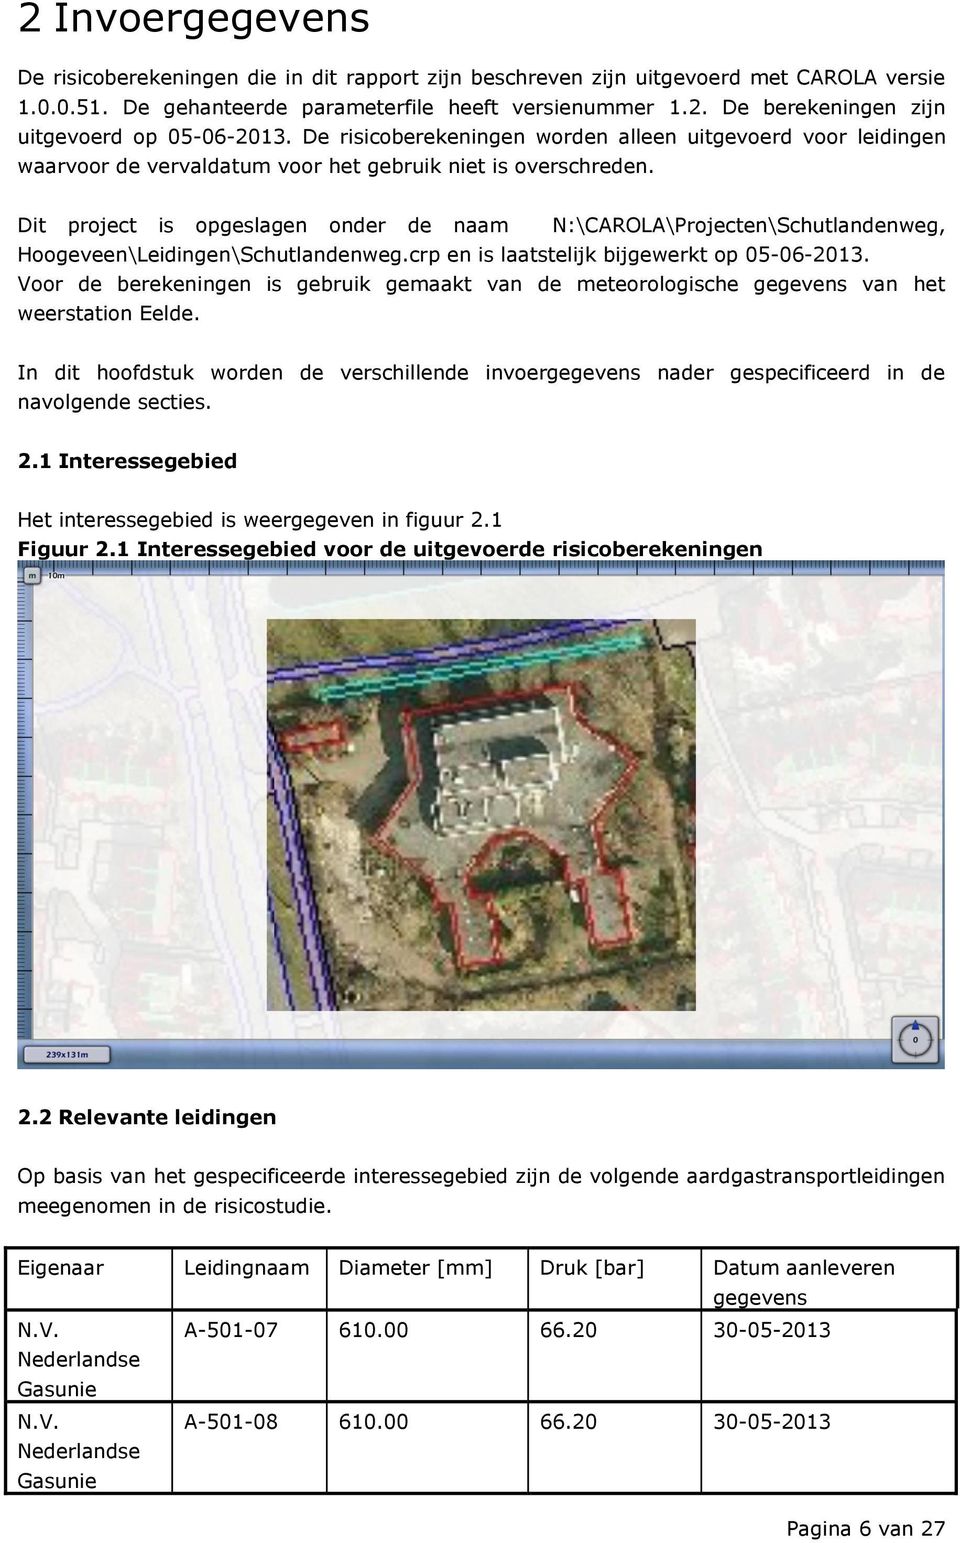 Dit project is opgeslagen onder de naam N:\CAROLA\Projecten\Schutlandenweg, Hoogeveen\Leidingen\Schutlandenweg.crp en is laatstelijk bijgewerkt op 05-06-2013.